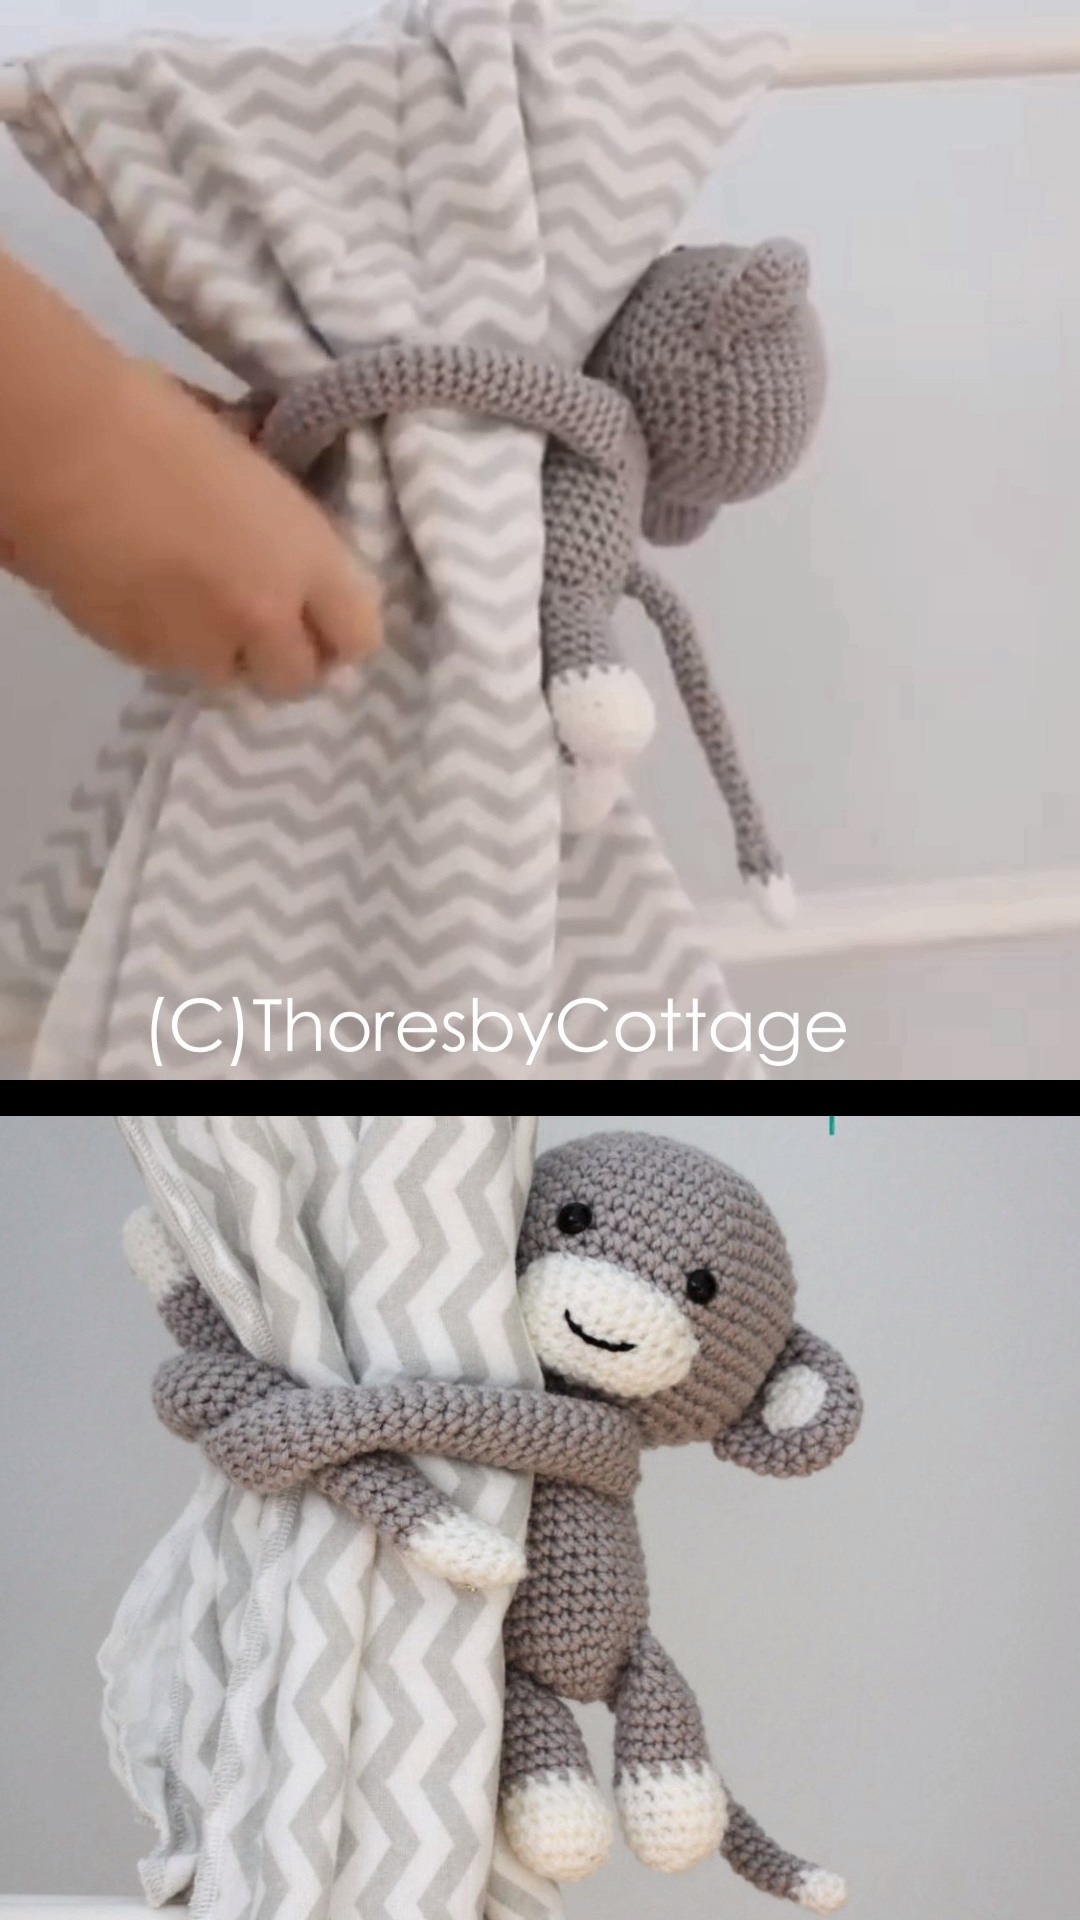 Crochet-Monkey-Curtain-Tie-Backs.png